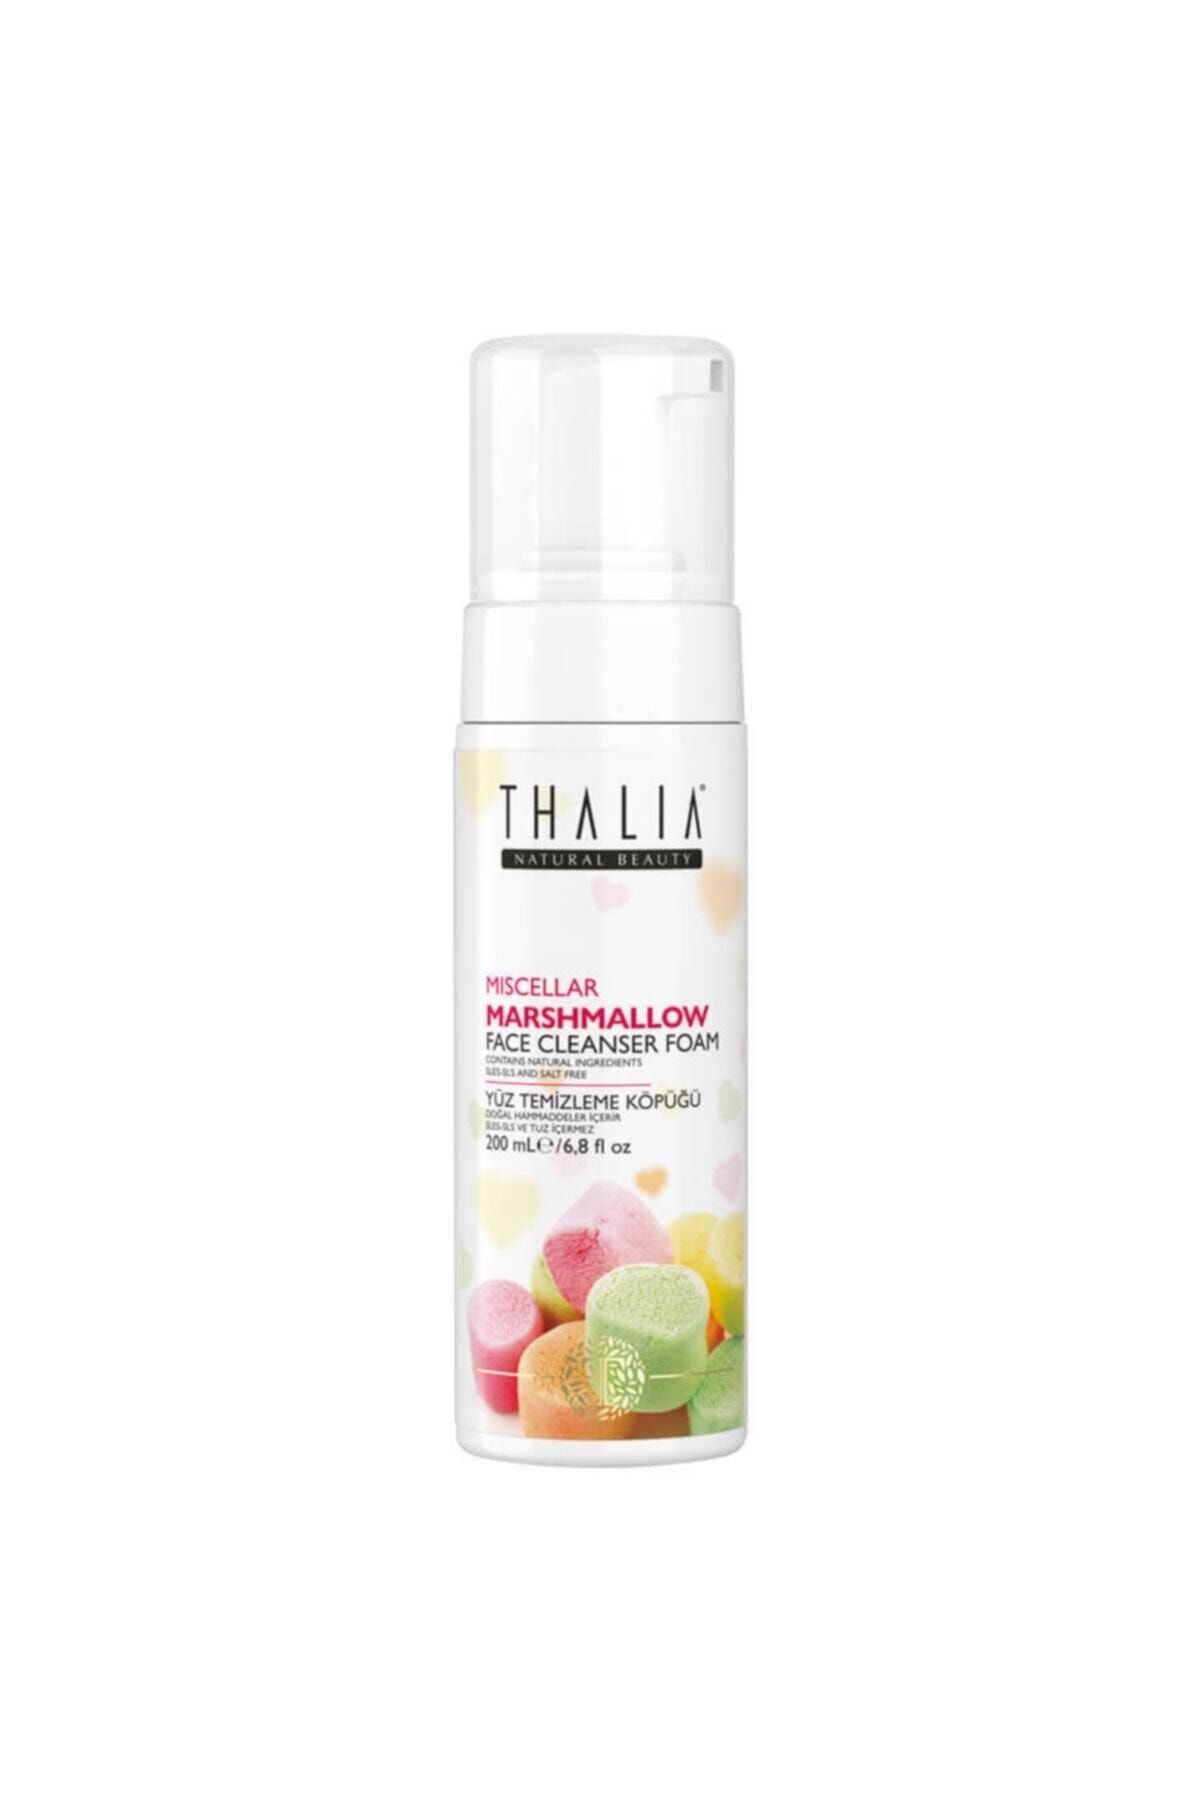 Thalia Akne& Sivilce Önlemeye Yardımcı Miscellar Marshmallow Yüz Temizleme Köpüğü - 200 ml